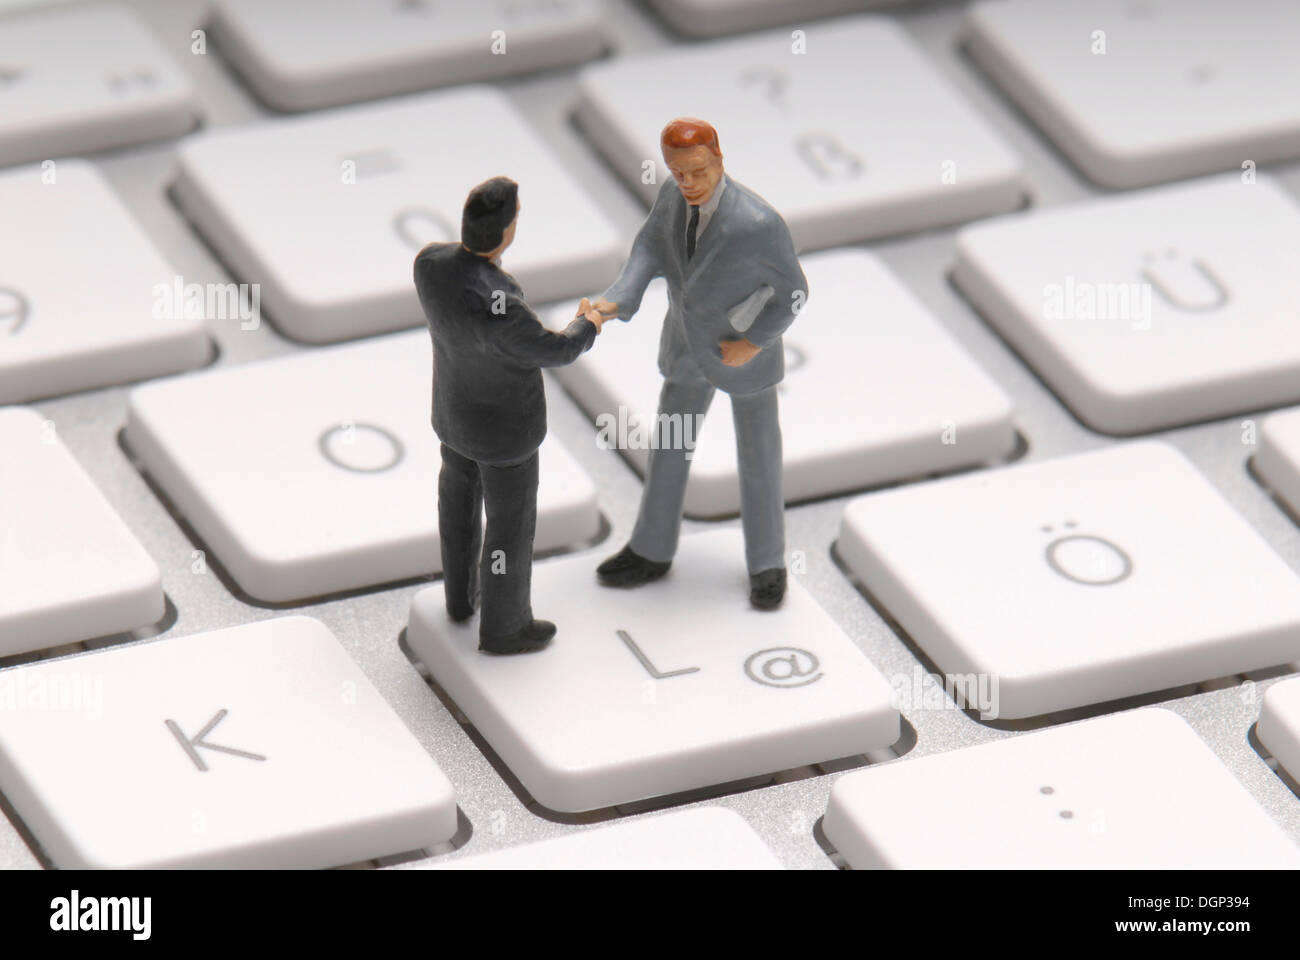 Dos hombres de negocios, figurillas, un apretón de manos en el en-clave, imagen simbólica para el comercio en Internet Foto de stock